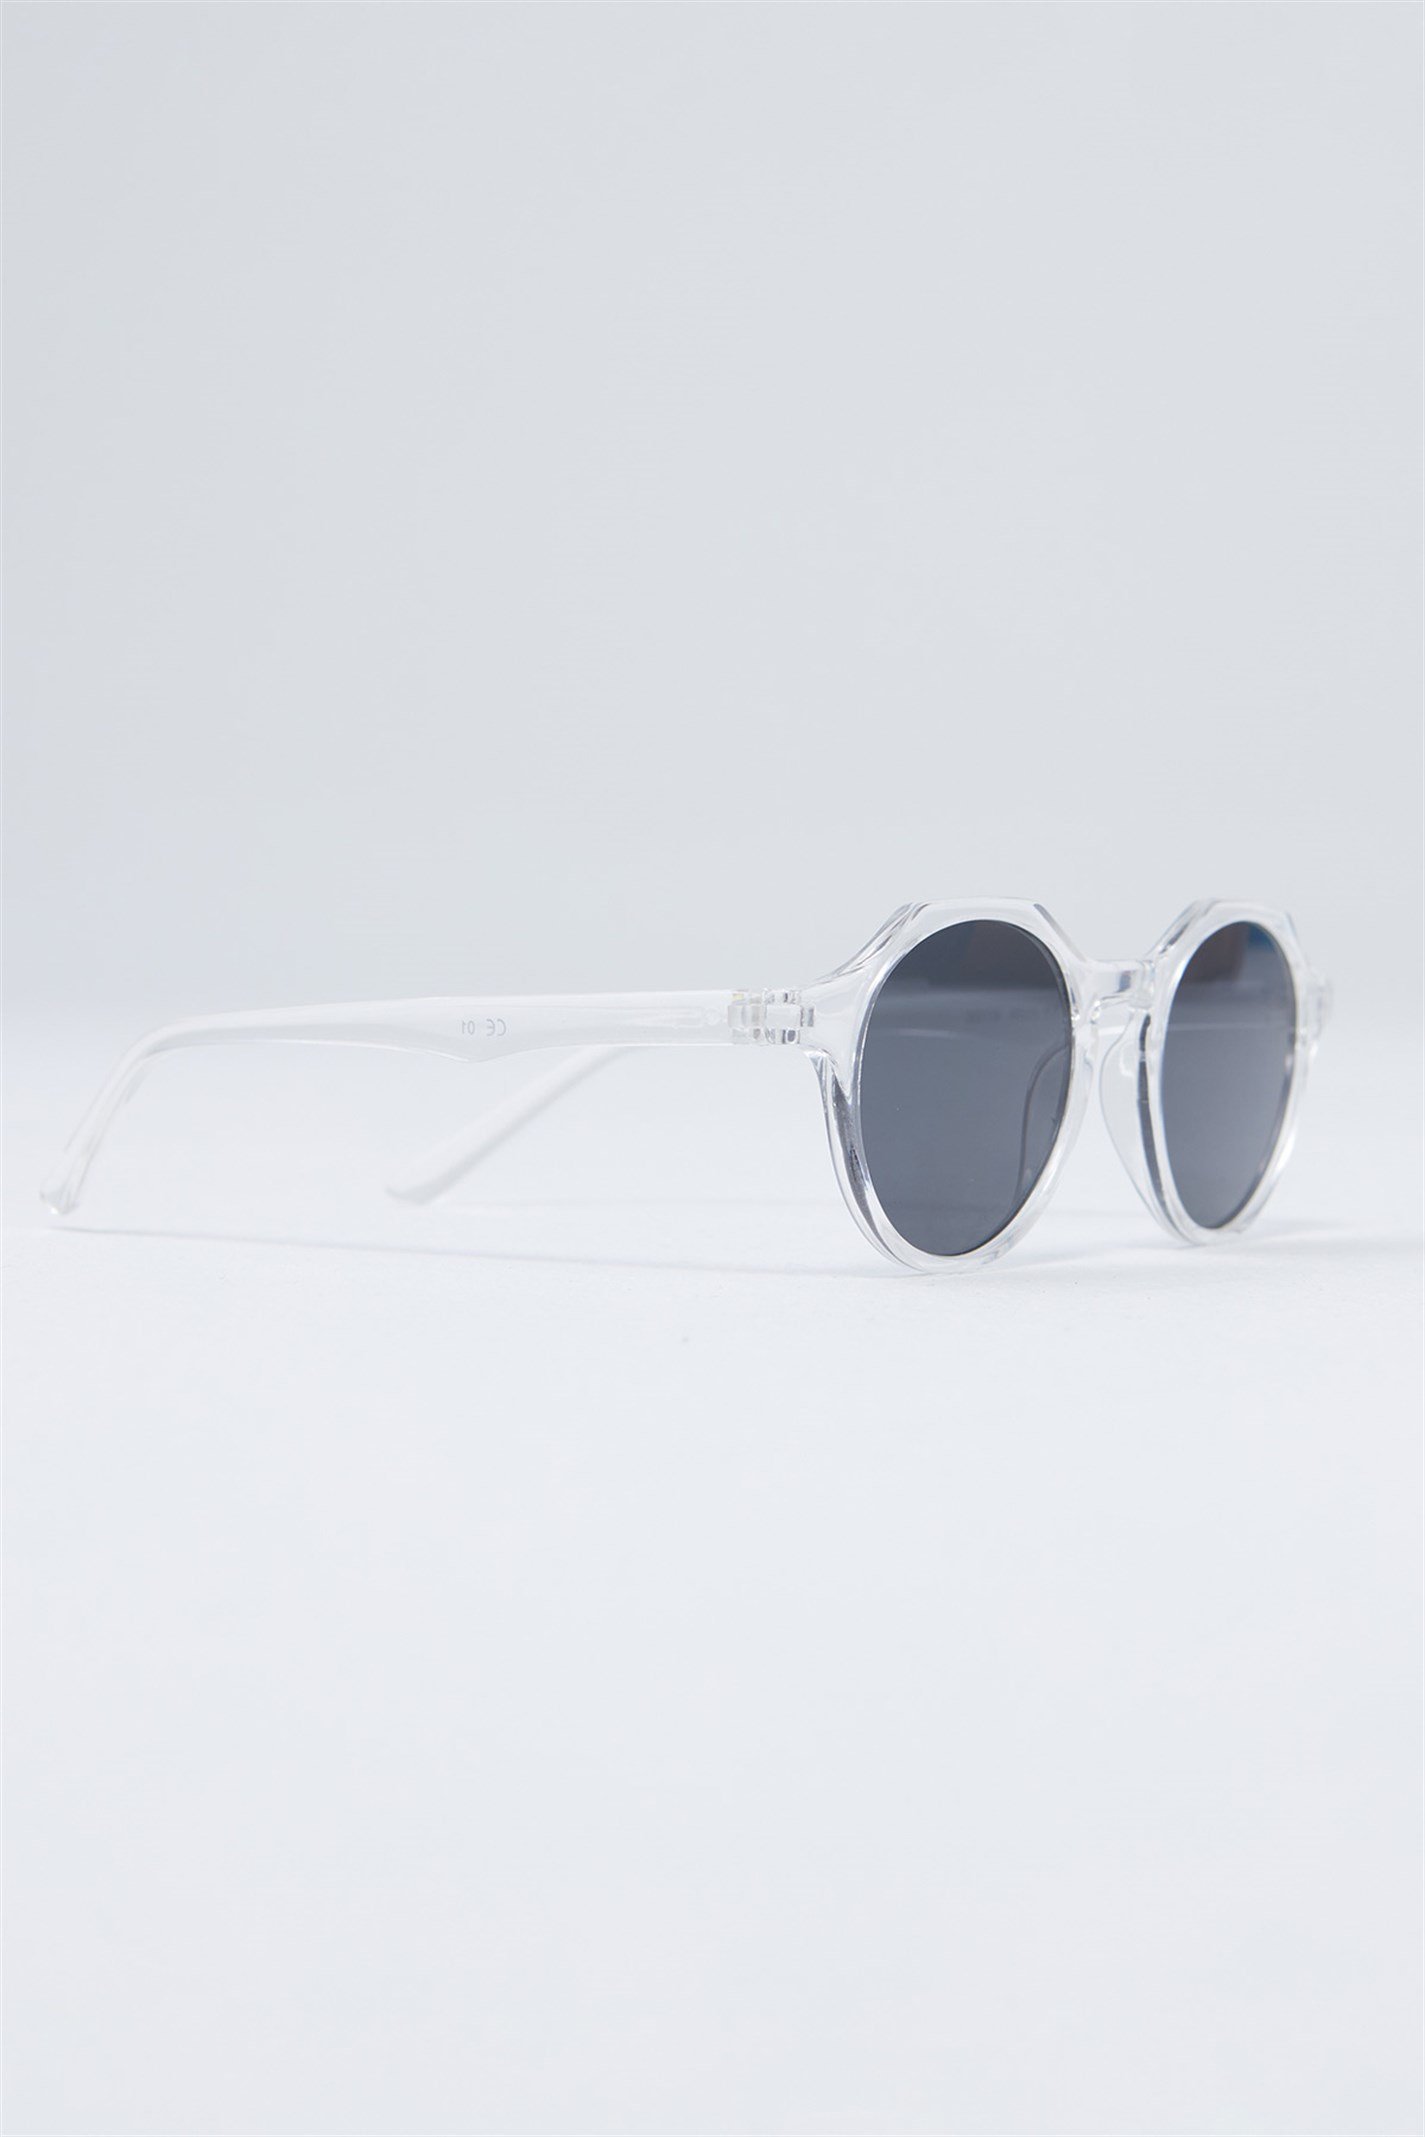 Şeffaf Asimetrik Çerçeveli Gözlük | Suud Collection